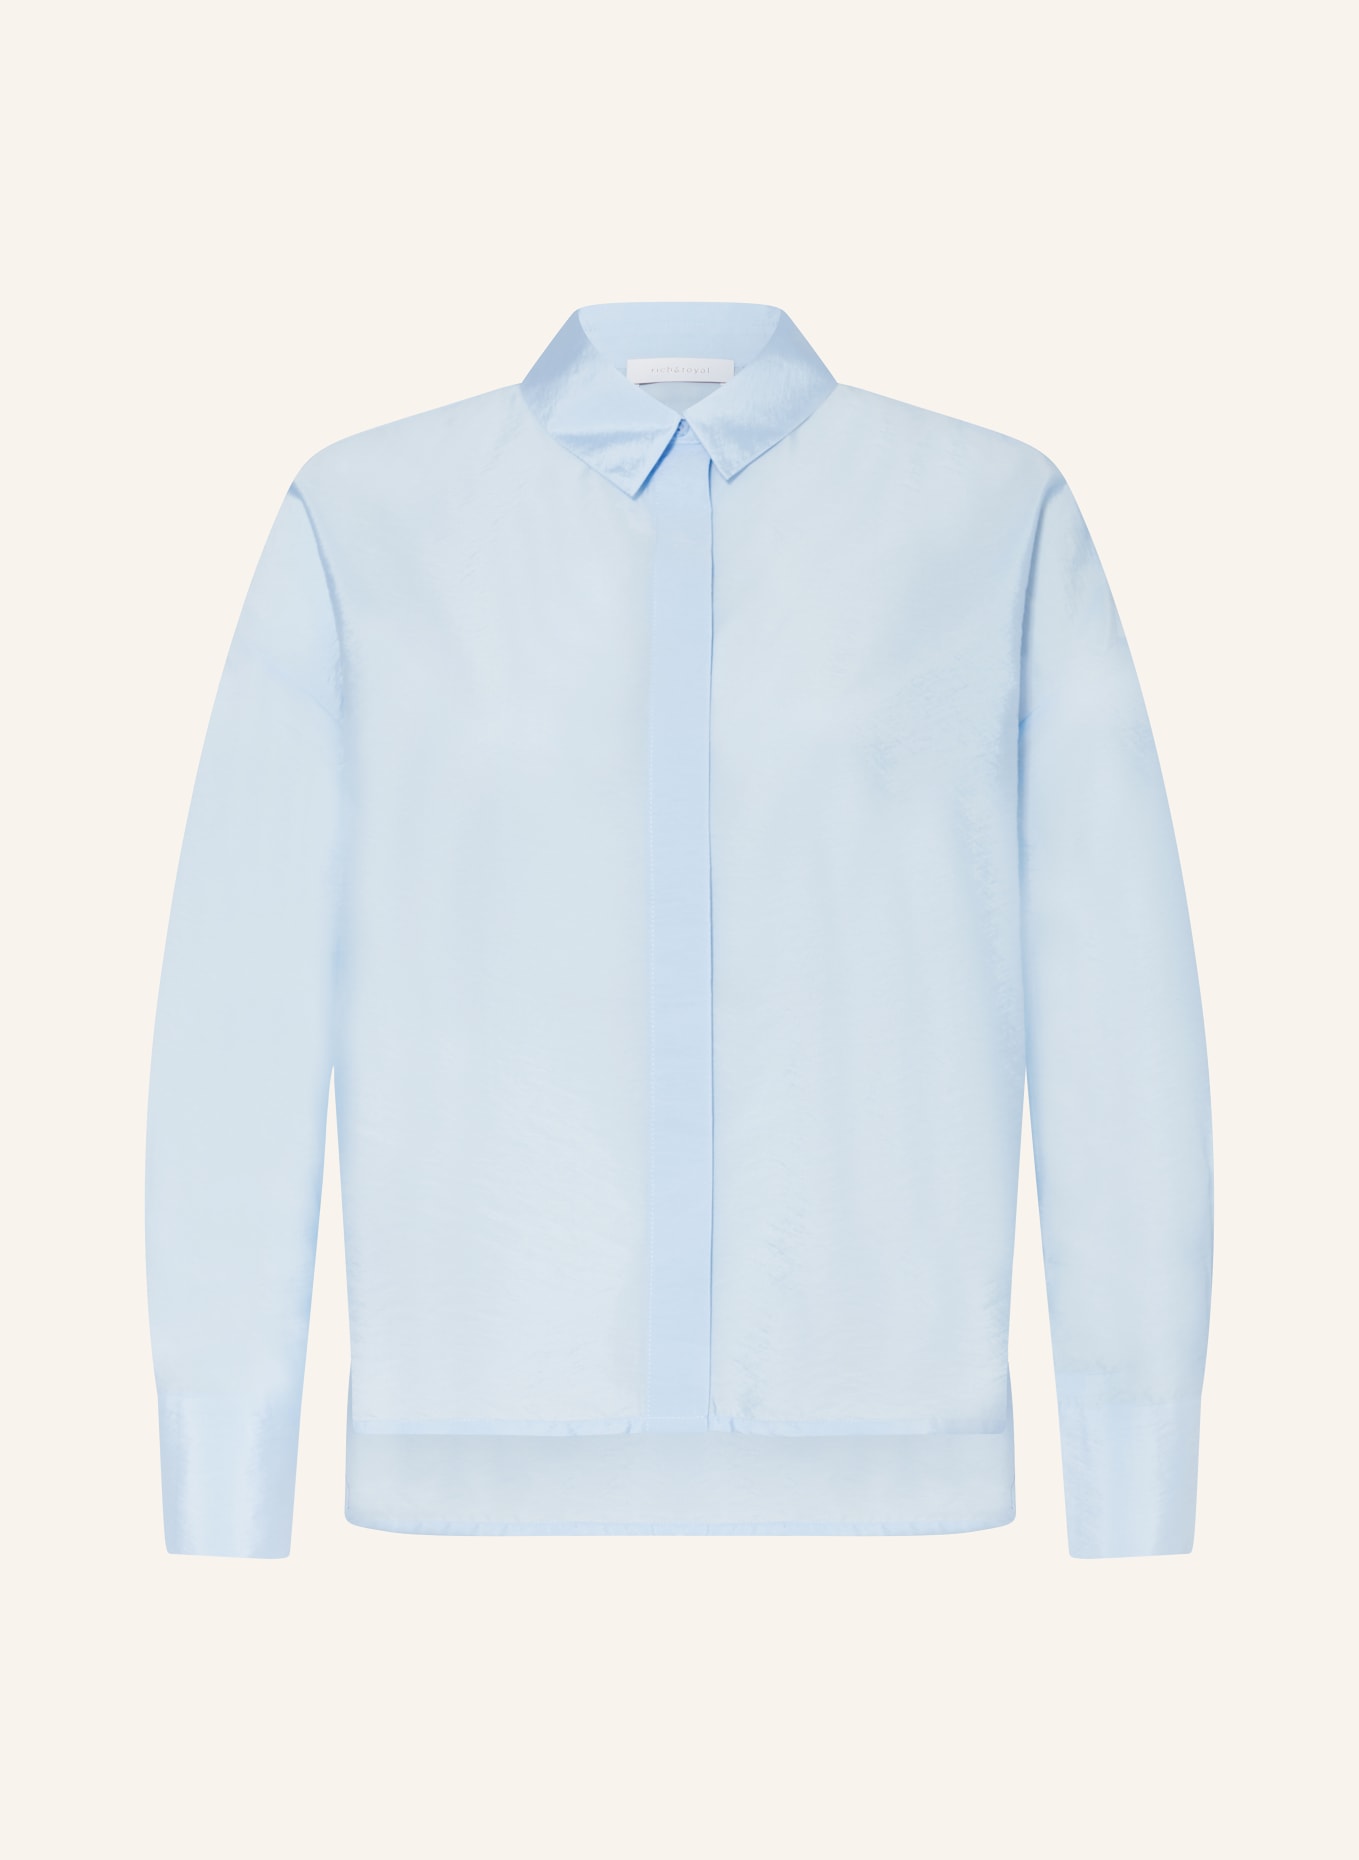 rich&royal Shirt blouse, Color: 715 cotton blue (Image 1)